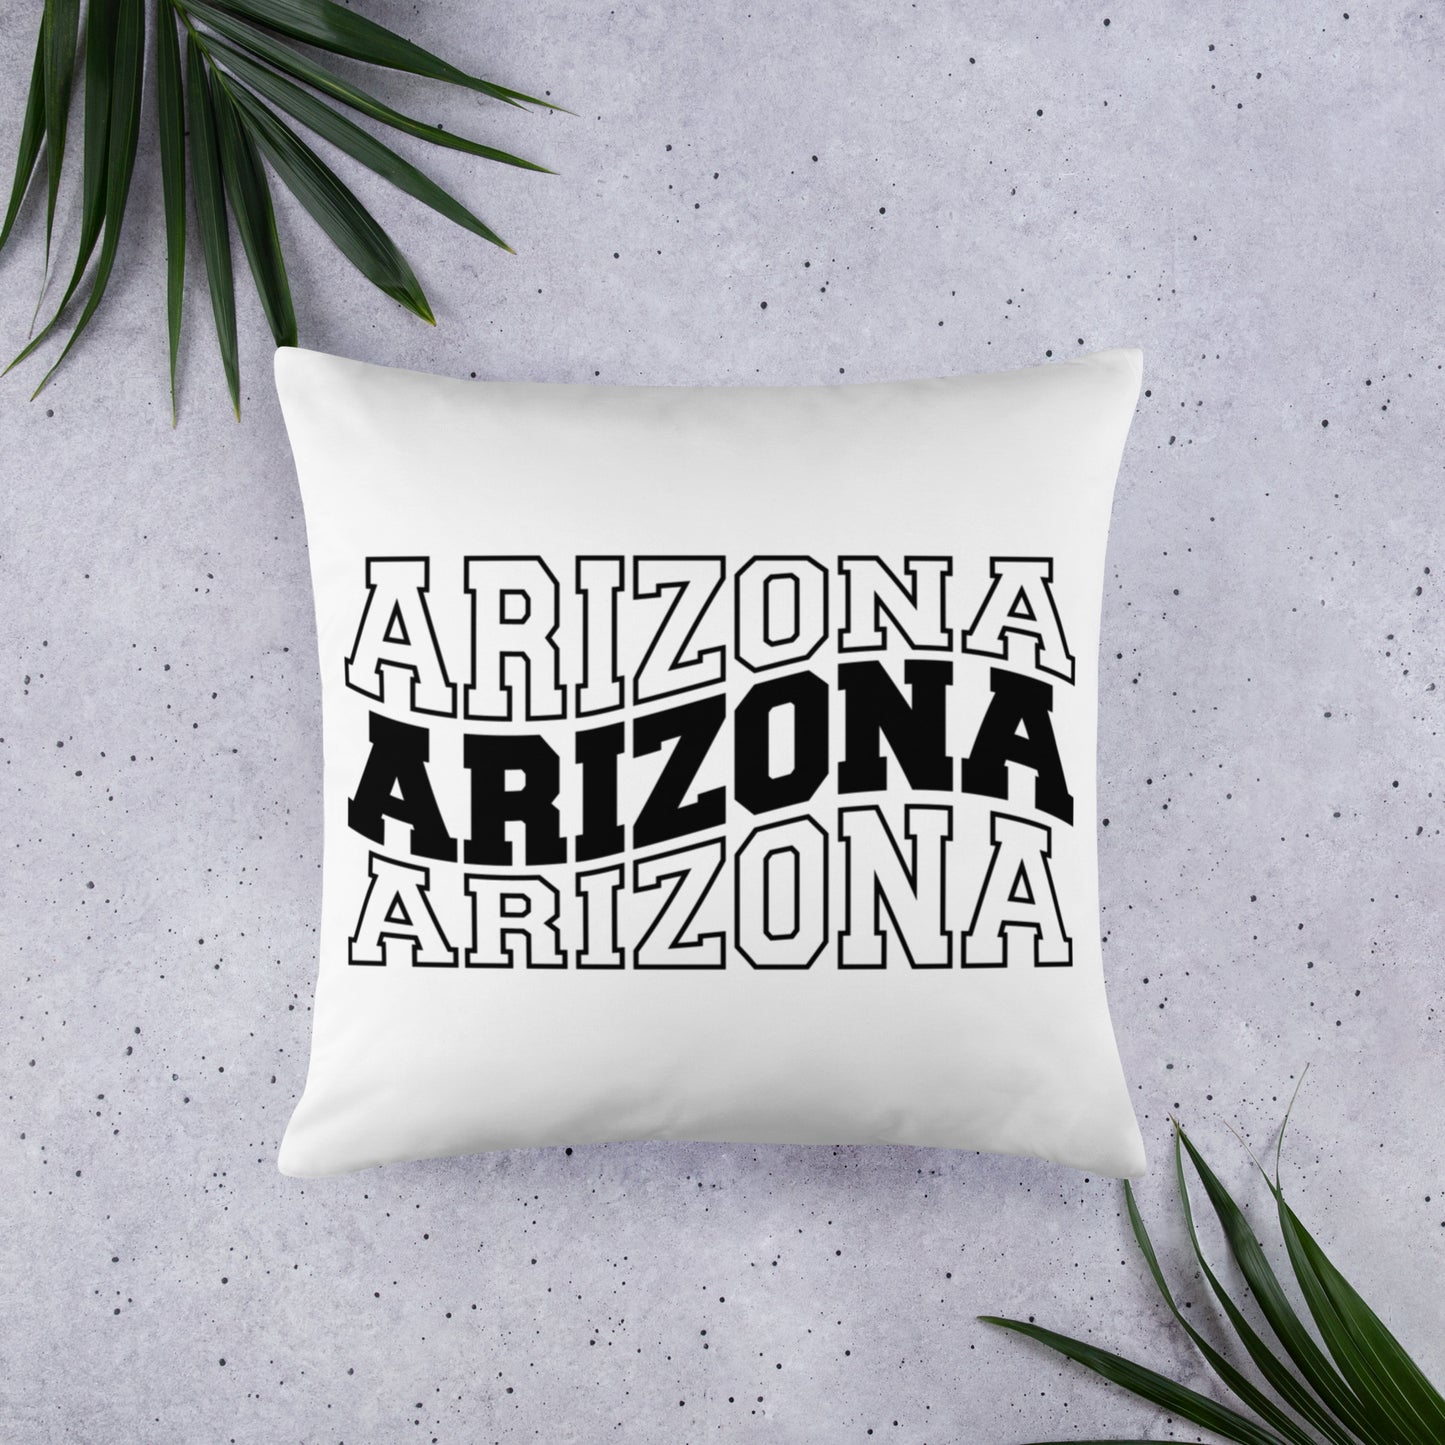 Arizona Wavy Letter Throw Pillow